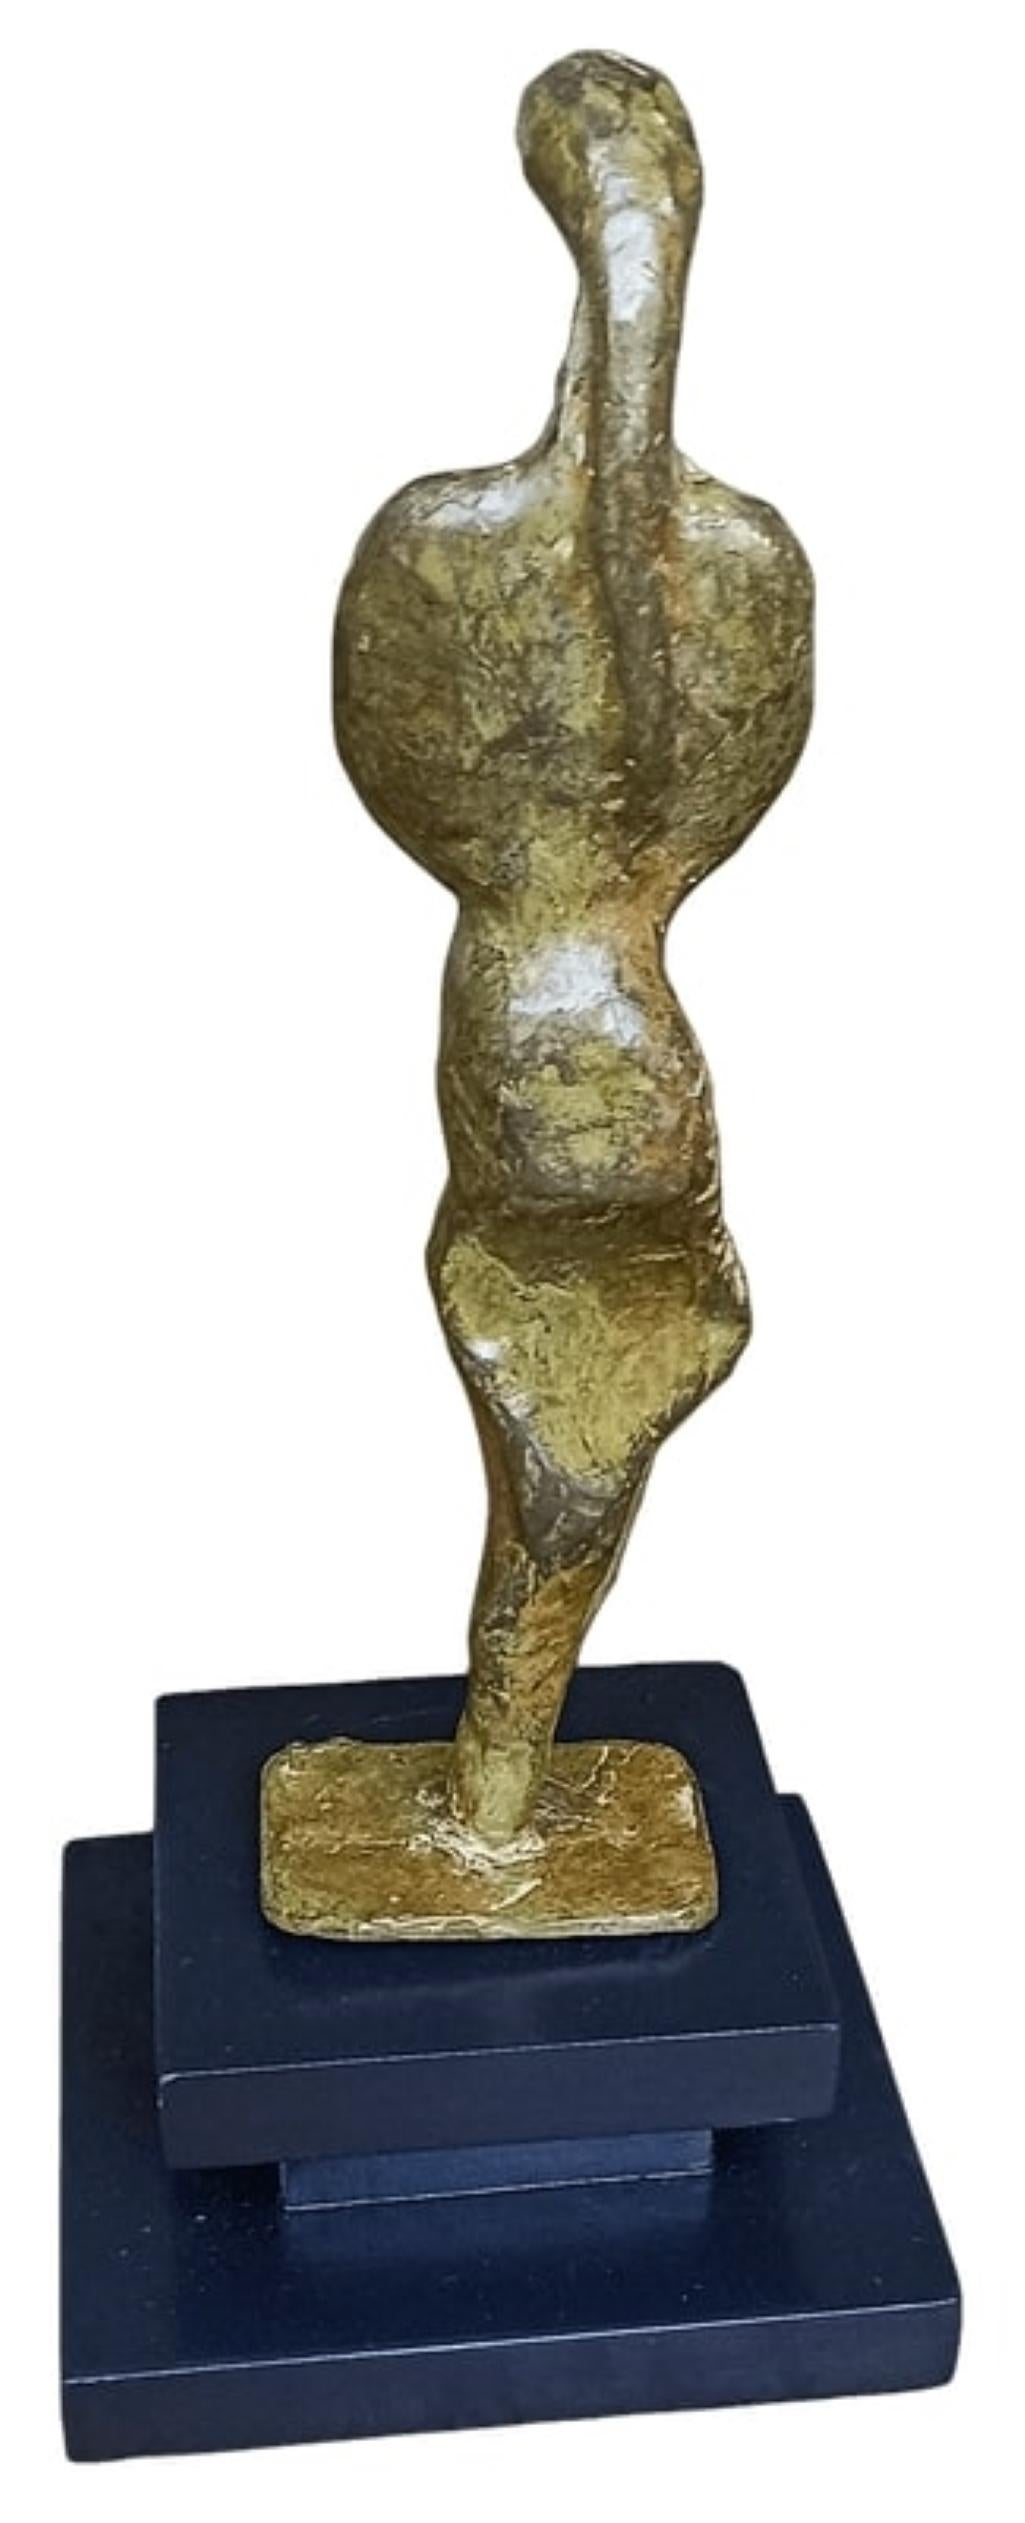 Tushar Kanti Das Roy - Sans titre
H 7.75 x L 2 x P 2 pouces (sans support)
H 9.5 x L 4 x P 4 pouces (avec support)
Sculpture en bronze

À propos de l'artiste et de son travail :
Né : 1968.
Éducation : Il a terminé ses études à l'I.C.Art & Craft à